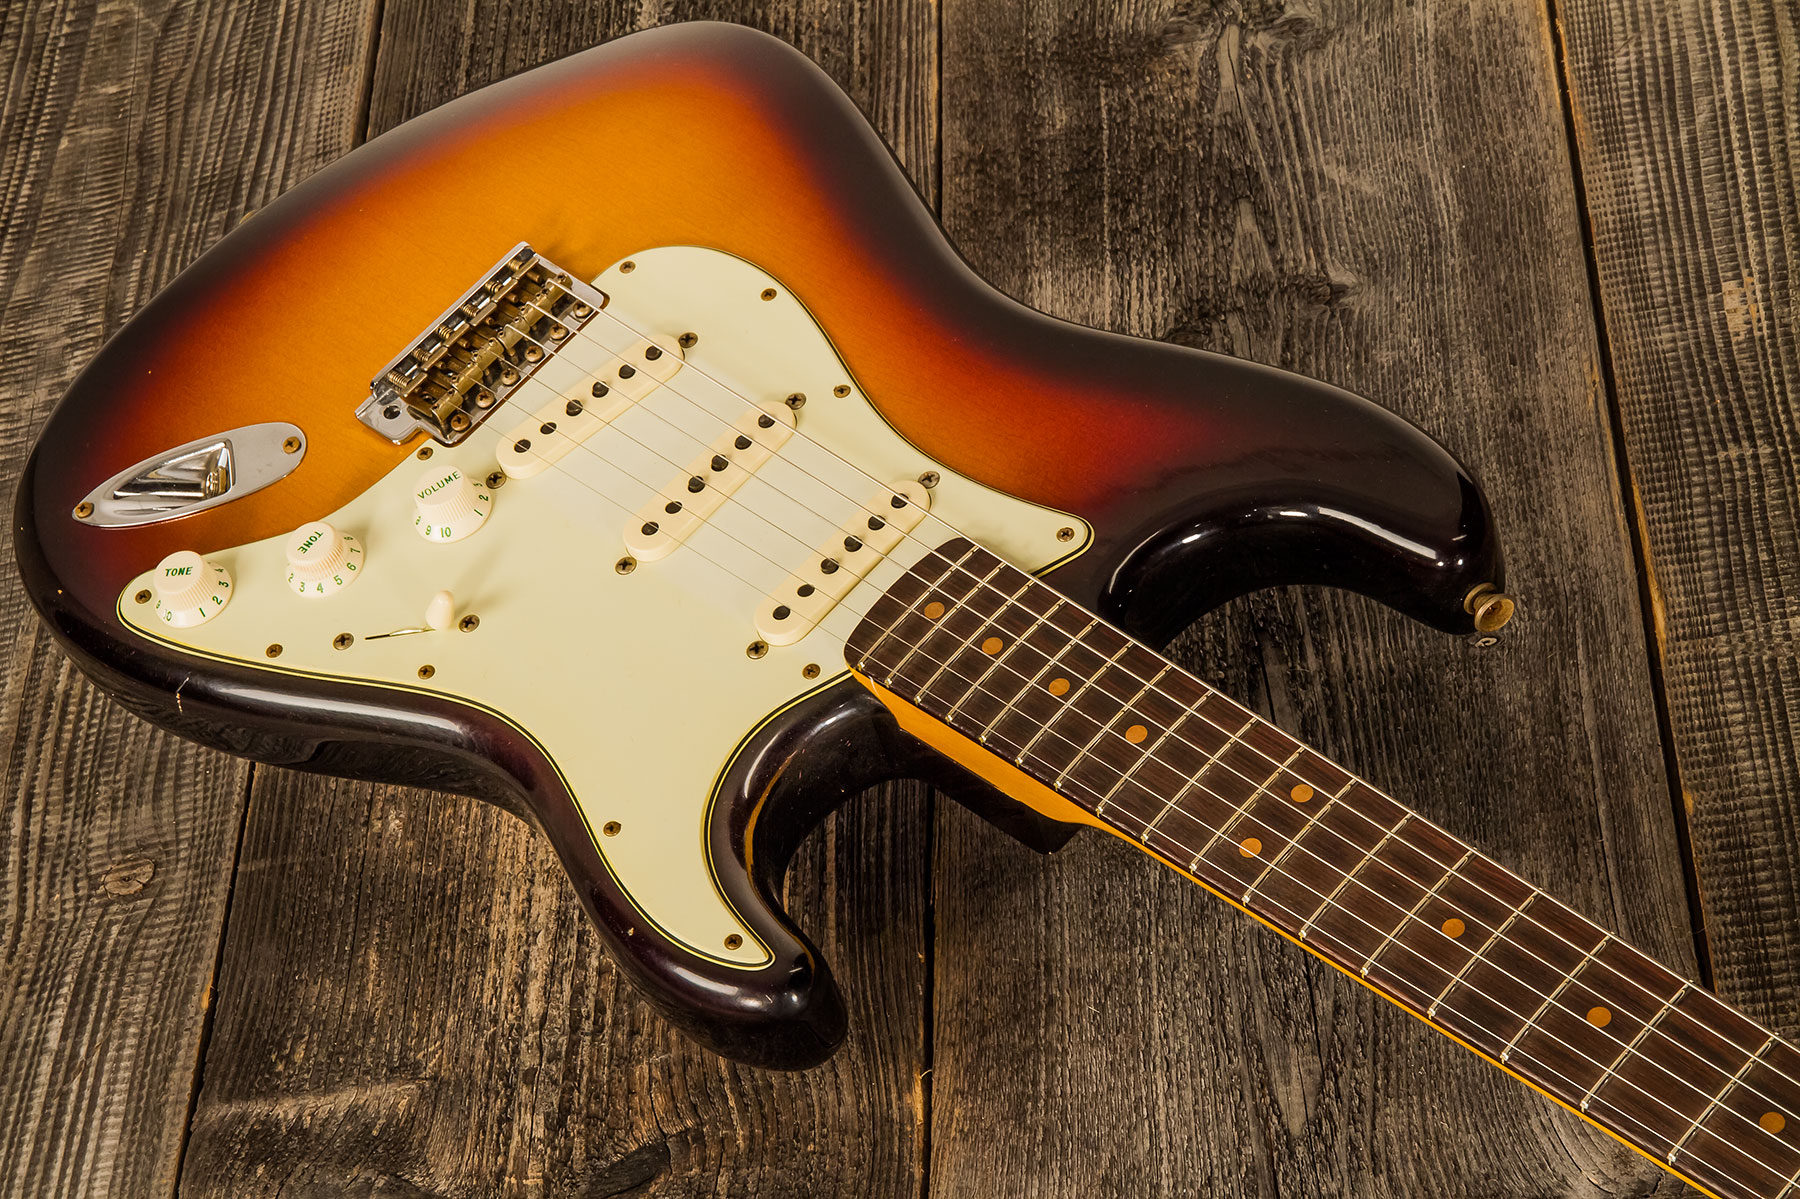 Fender Custom Shop Strat 1964 3s Trem Rw - Journeyman Relic Target 3-color Sunburst - Str shape electric guitar - Variation 1